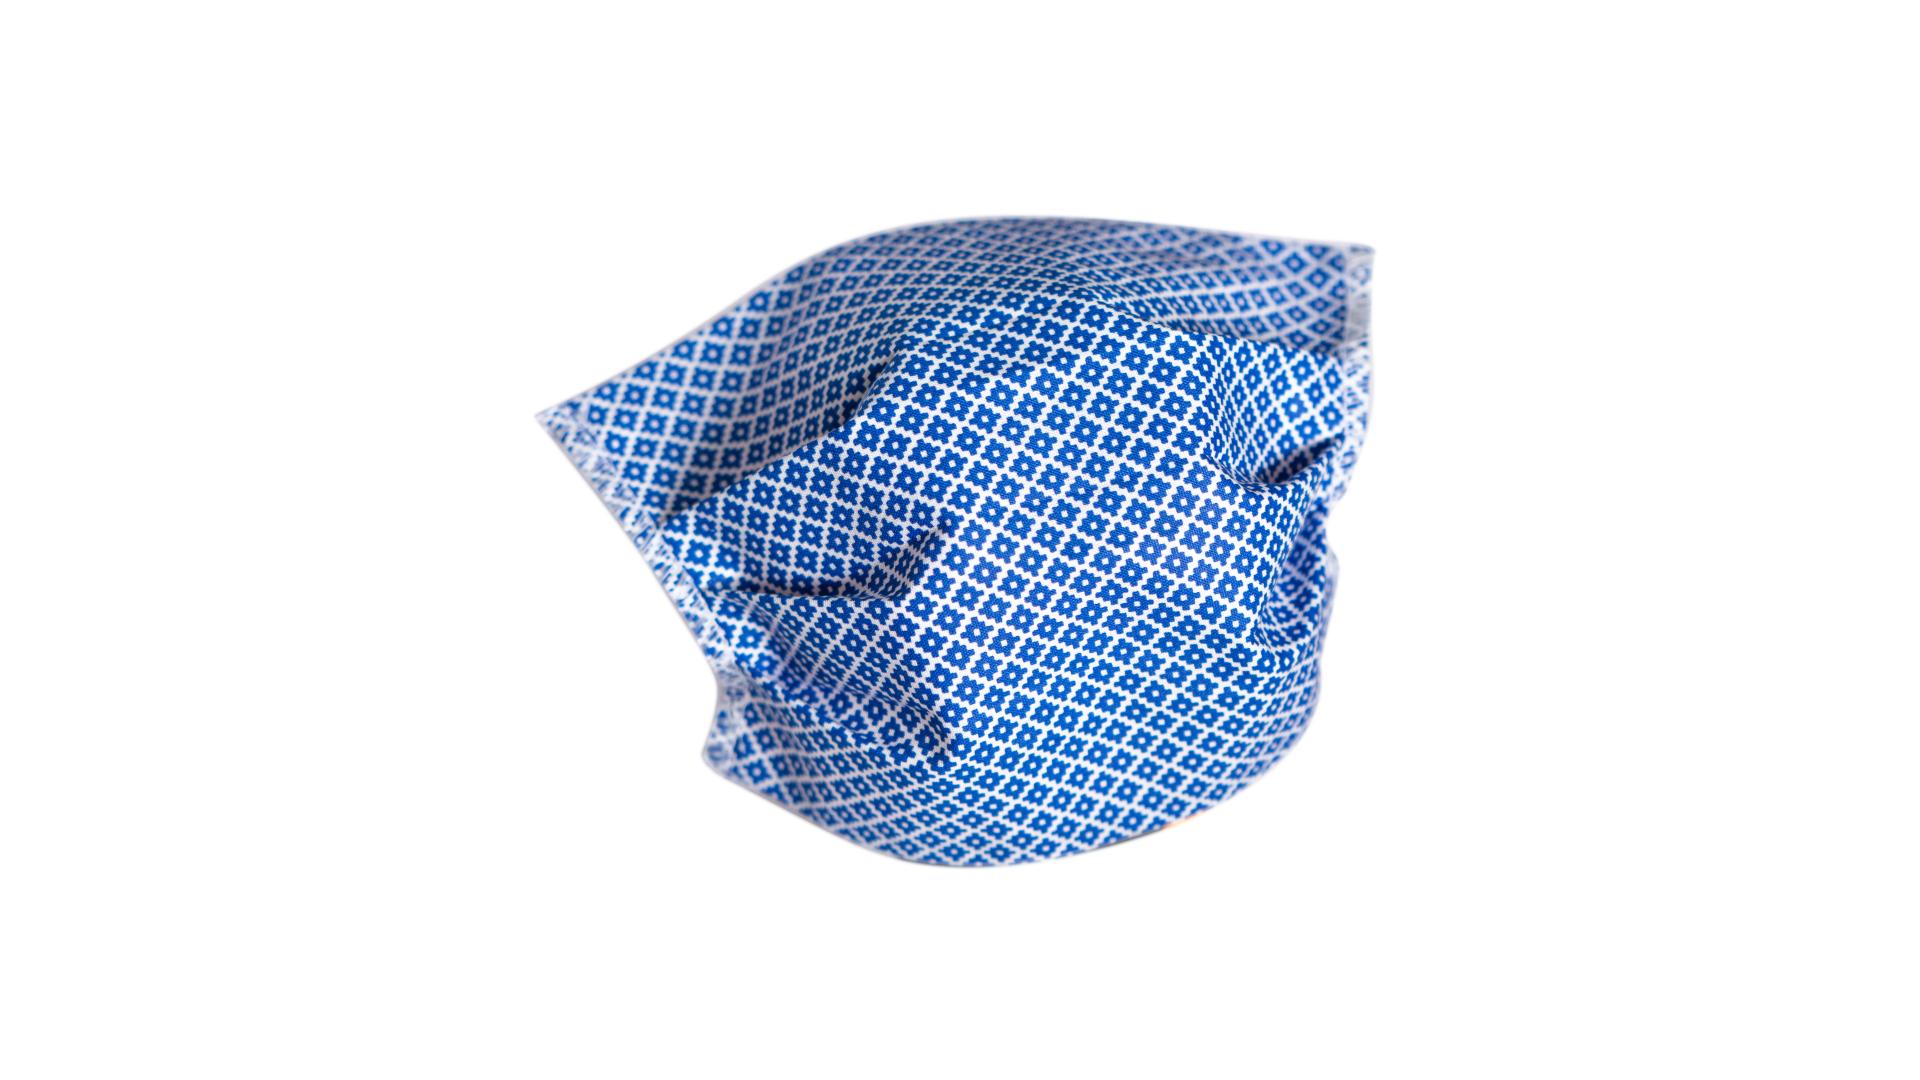 4CARS Dvouvrstvé ochranné bavlněné rouško modré s gumičkou 1ks - menší